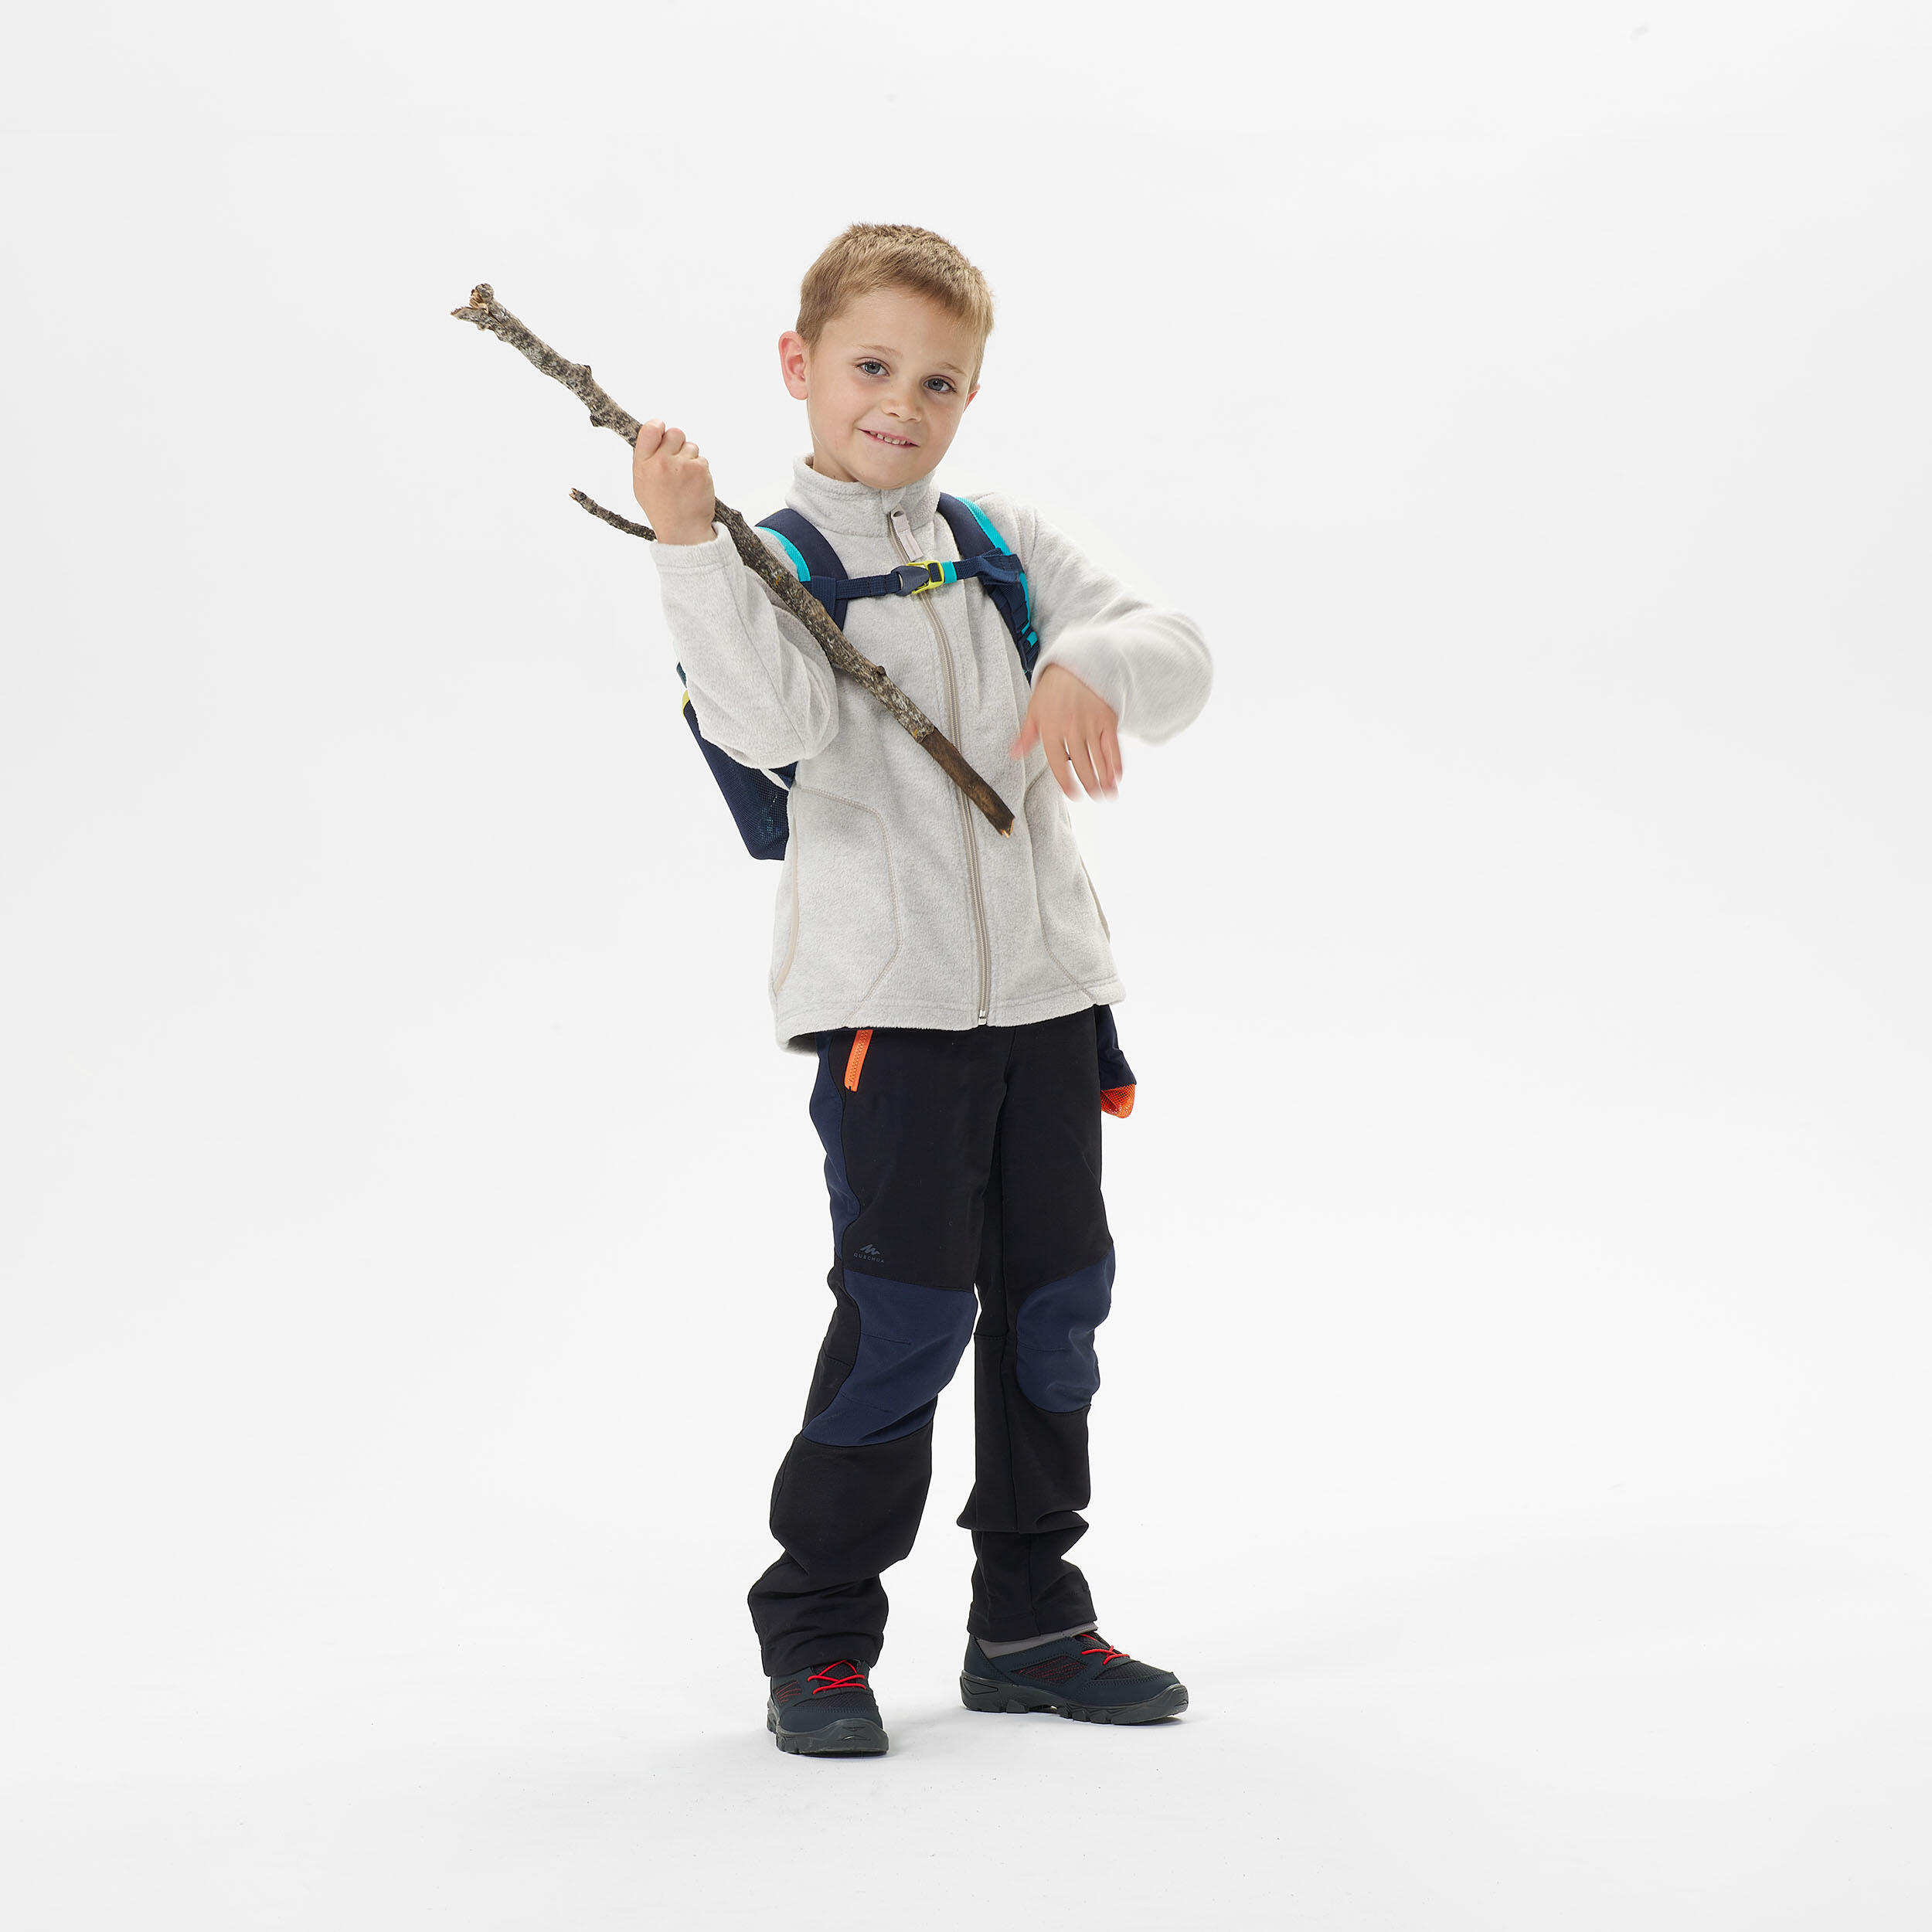 Kids’ Hiking Fleece Jacket - MH150 Aged 2-6 - Beige 2/4